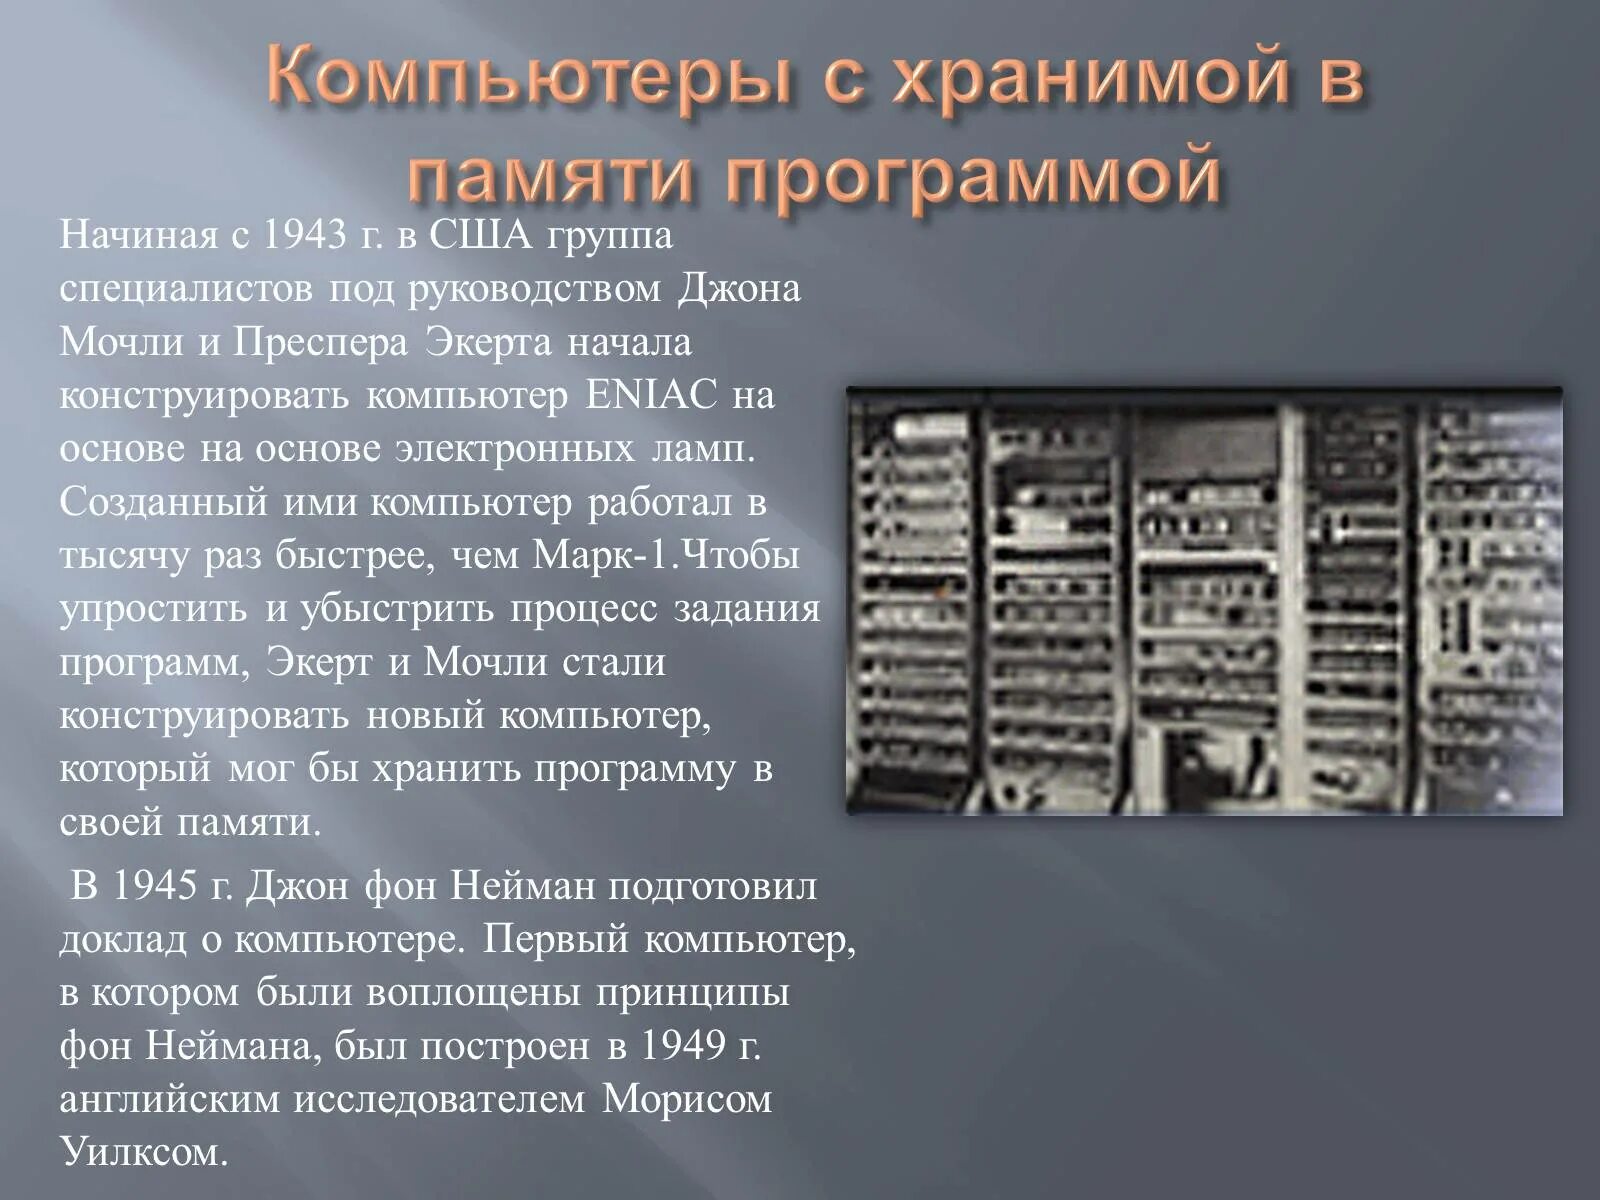 Память вычислительной машины. Джон фон Нейман вычислительная машина. Гибридные вычислительные машины (ГВМ). Первый компьютер. Самый первый компьютер.